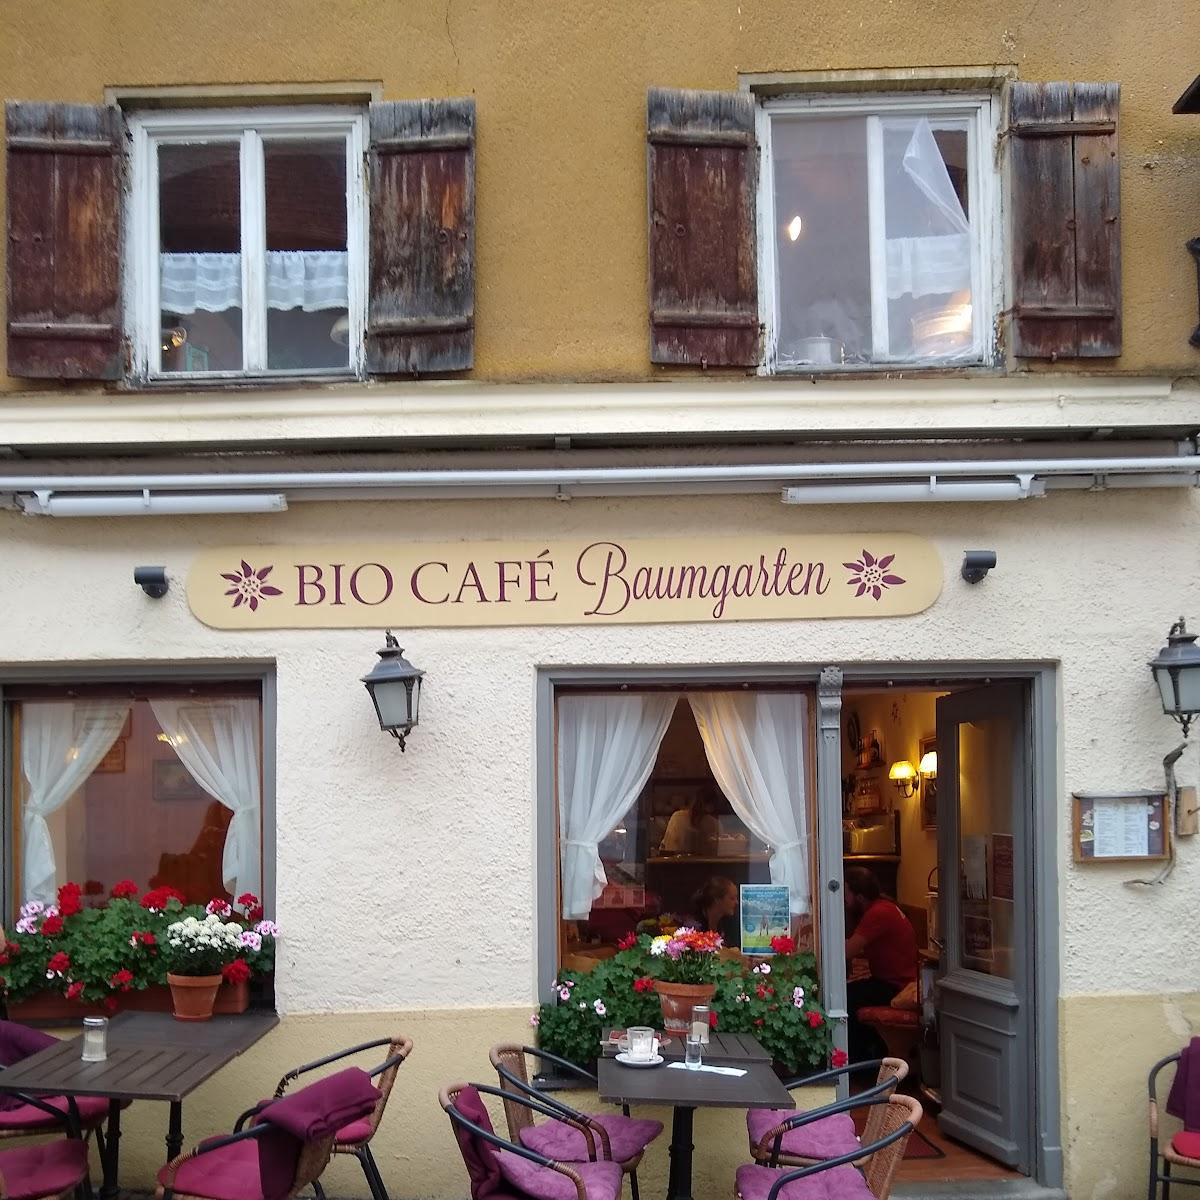 Restaurant "Bio Café Baumgarten" in Füssen